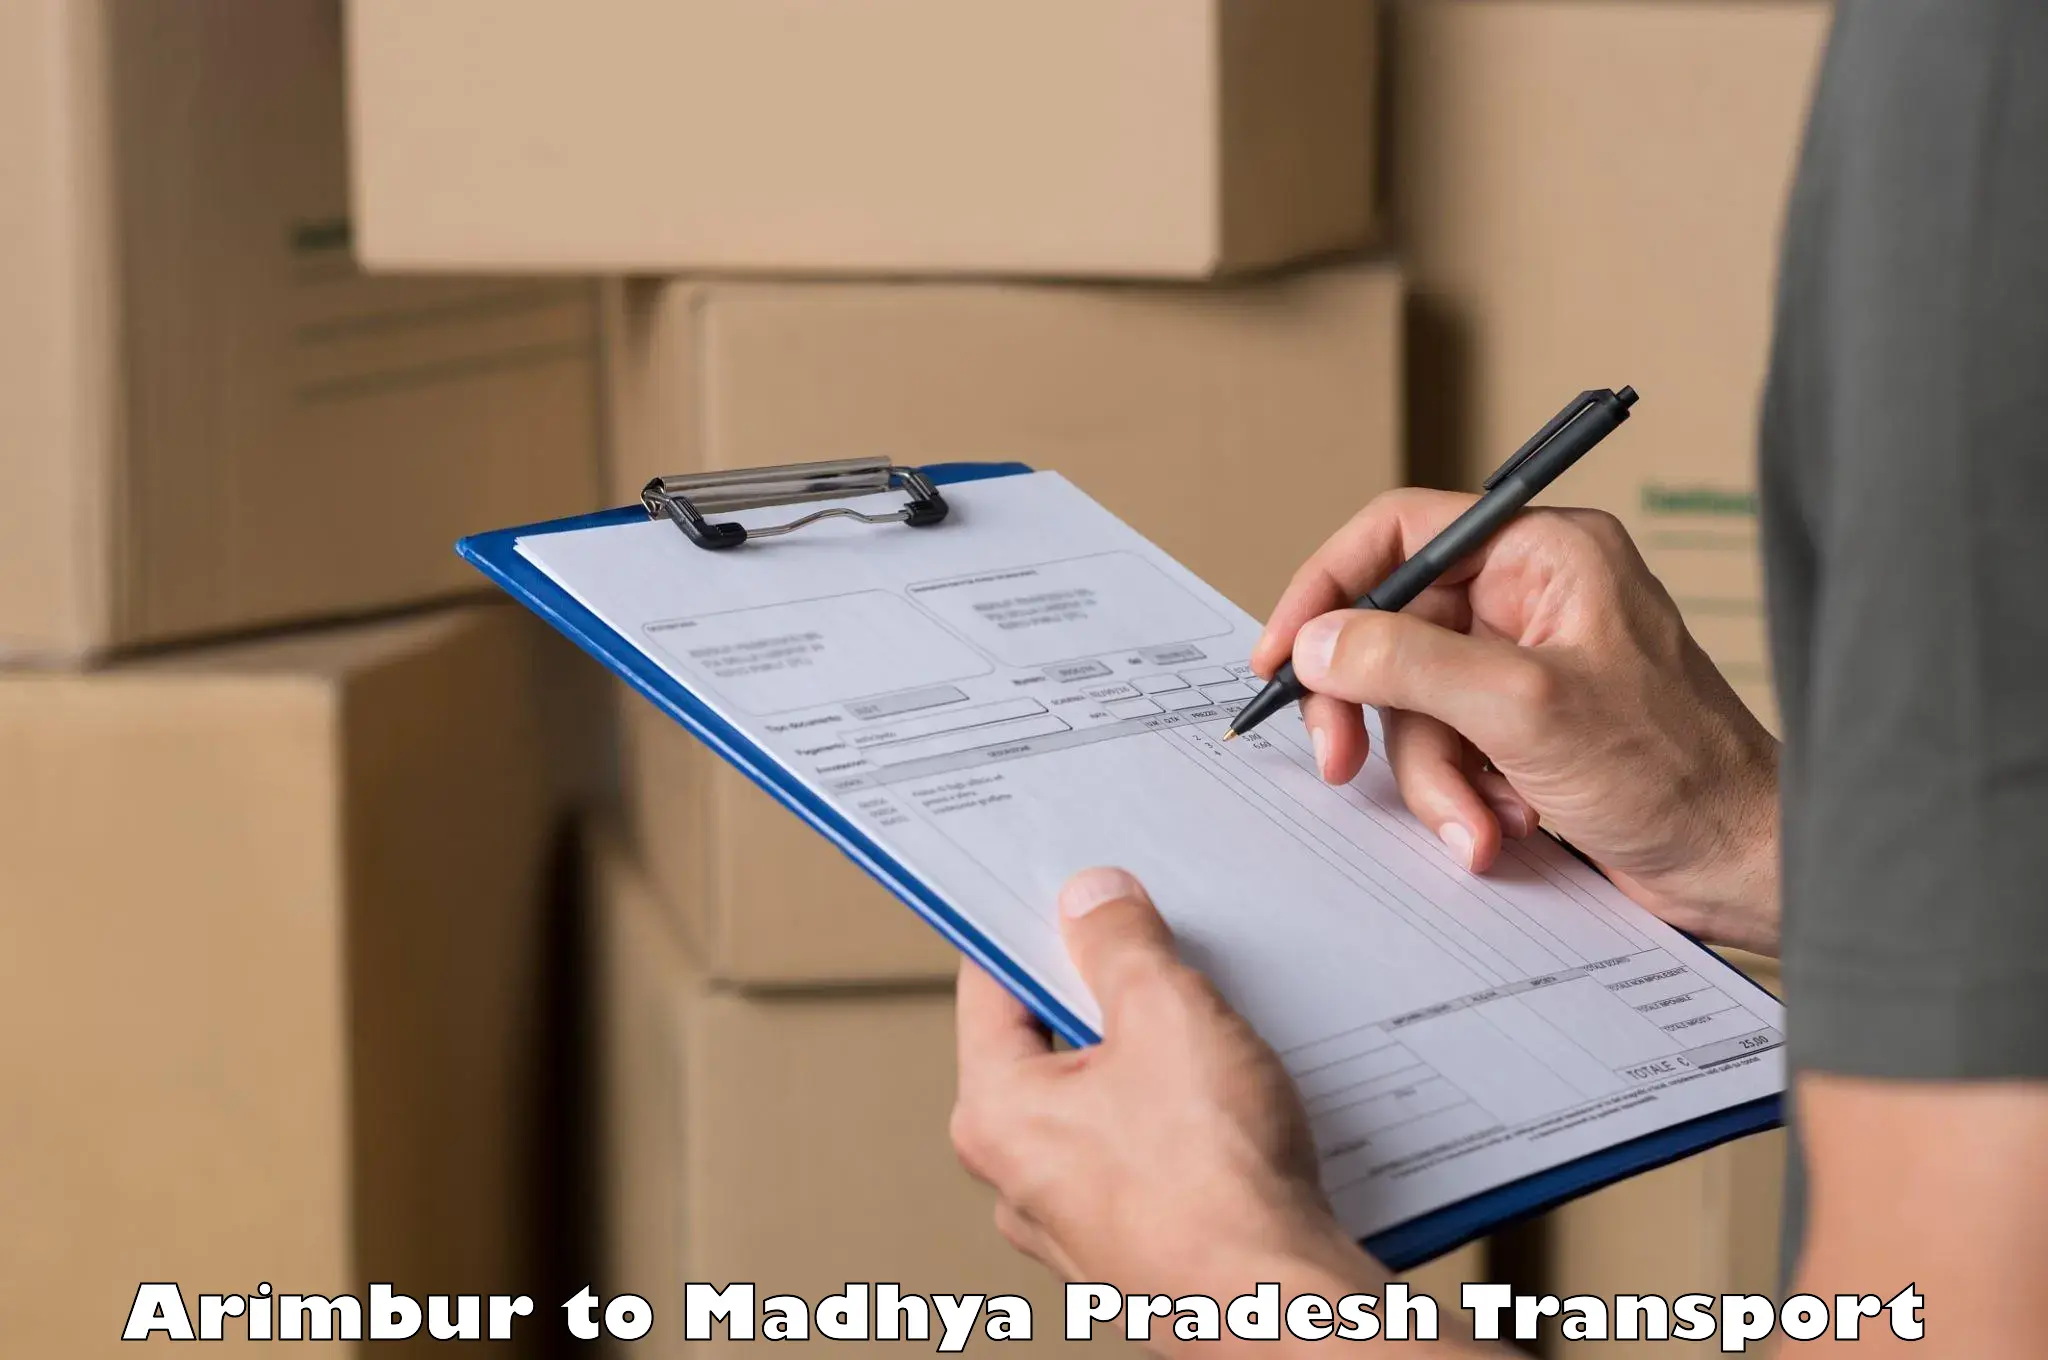 Container transport service in Arimbur to Mundi